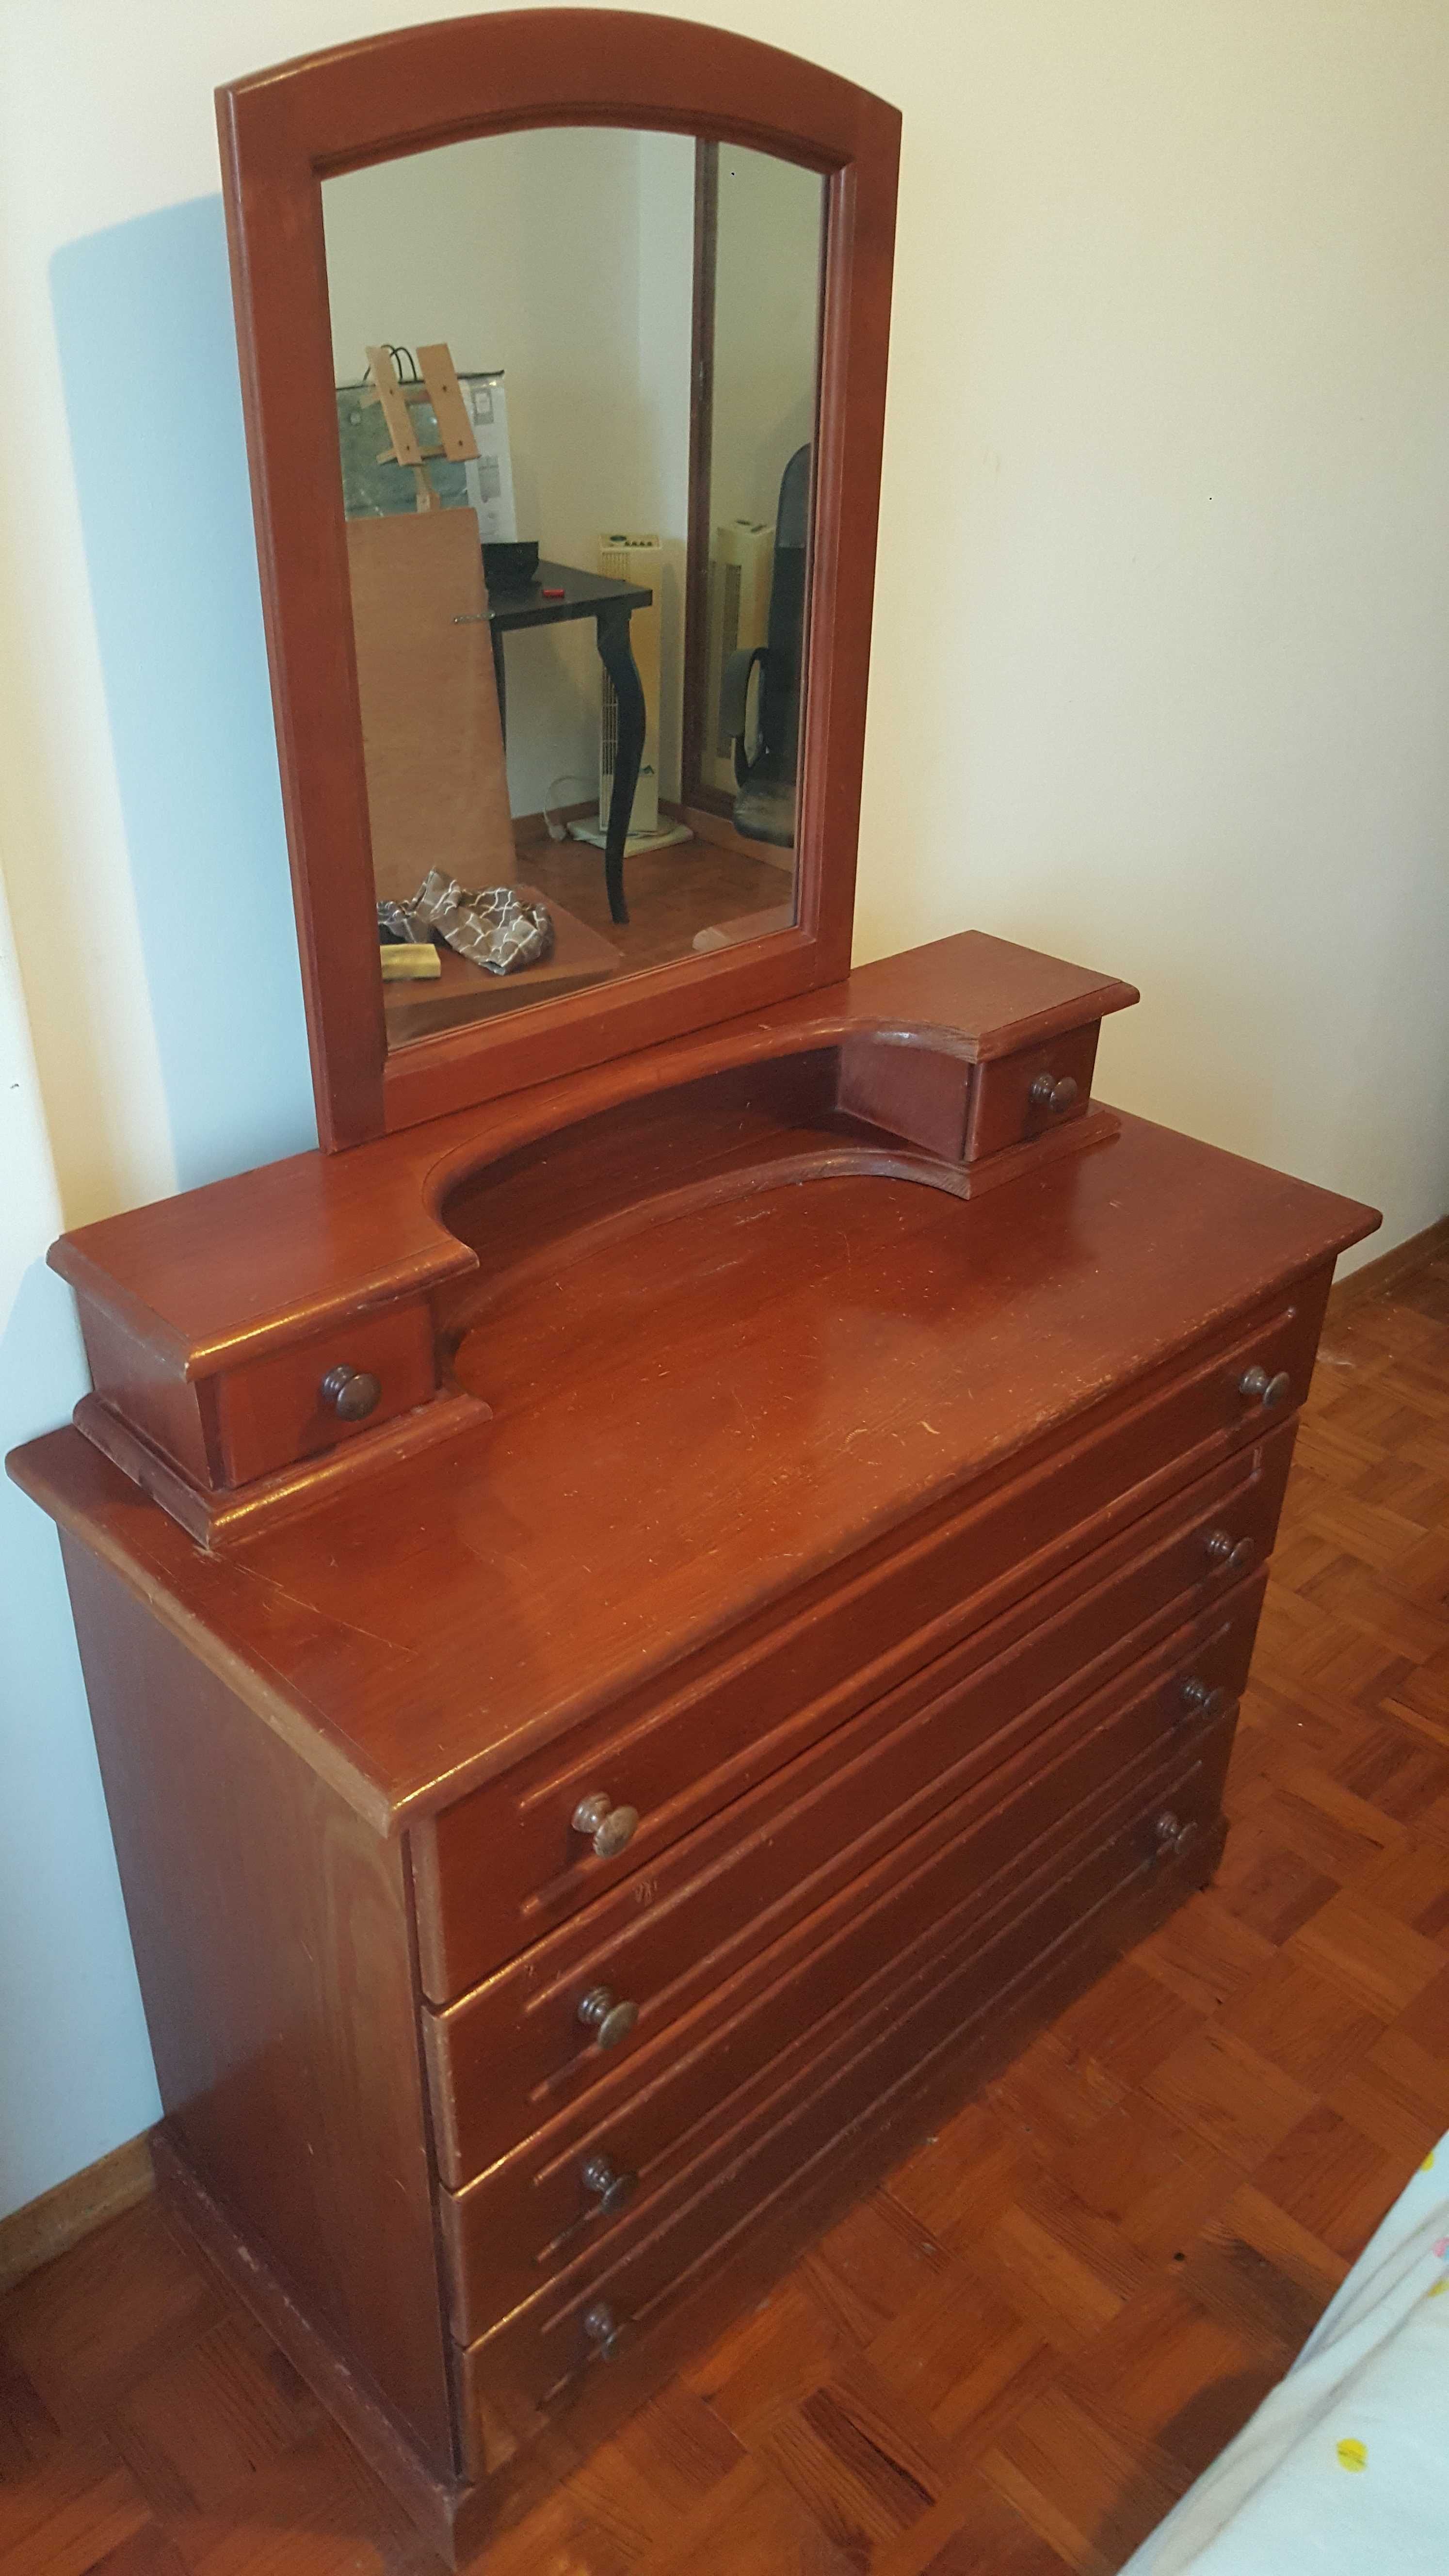 Quarto mobilia completa em madeira carvalho clara bom estado